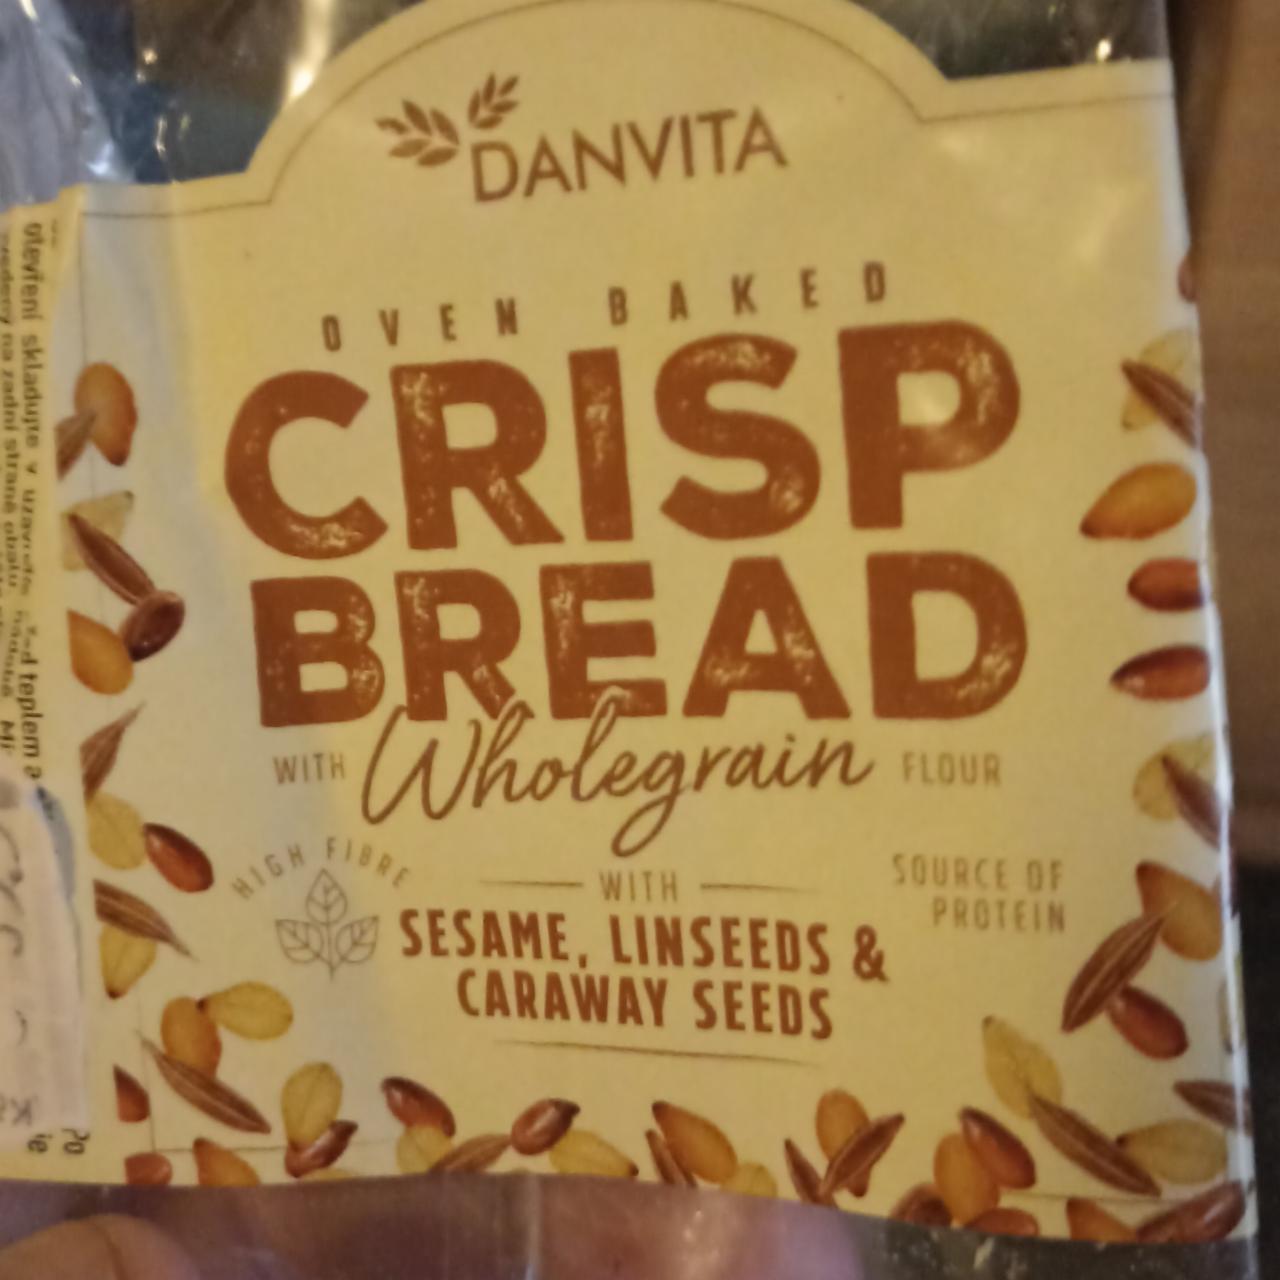 Fotografie - Oven Baked Crisp Bread Wholegrain Sesame, Linseeds & Caraway Seeds